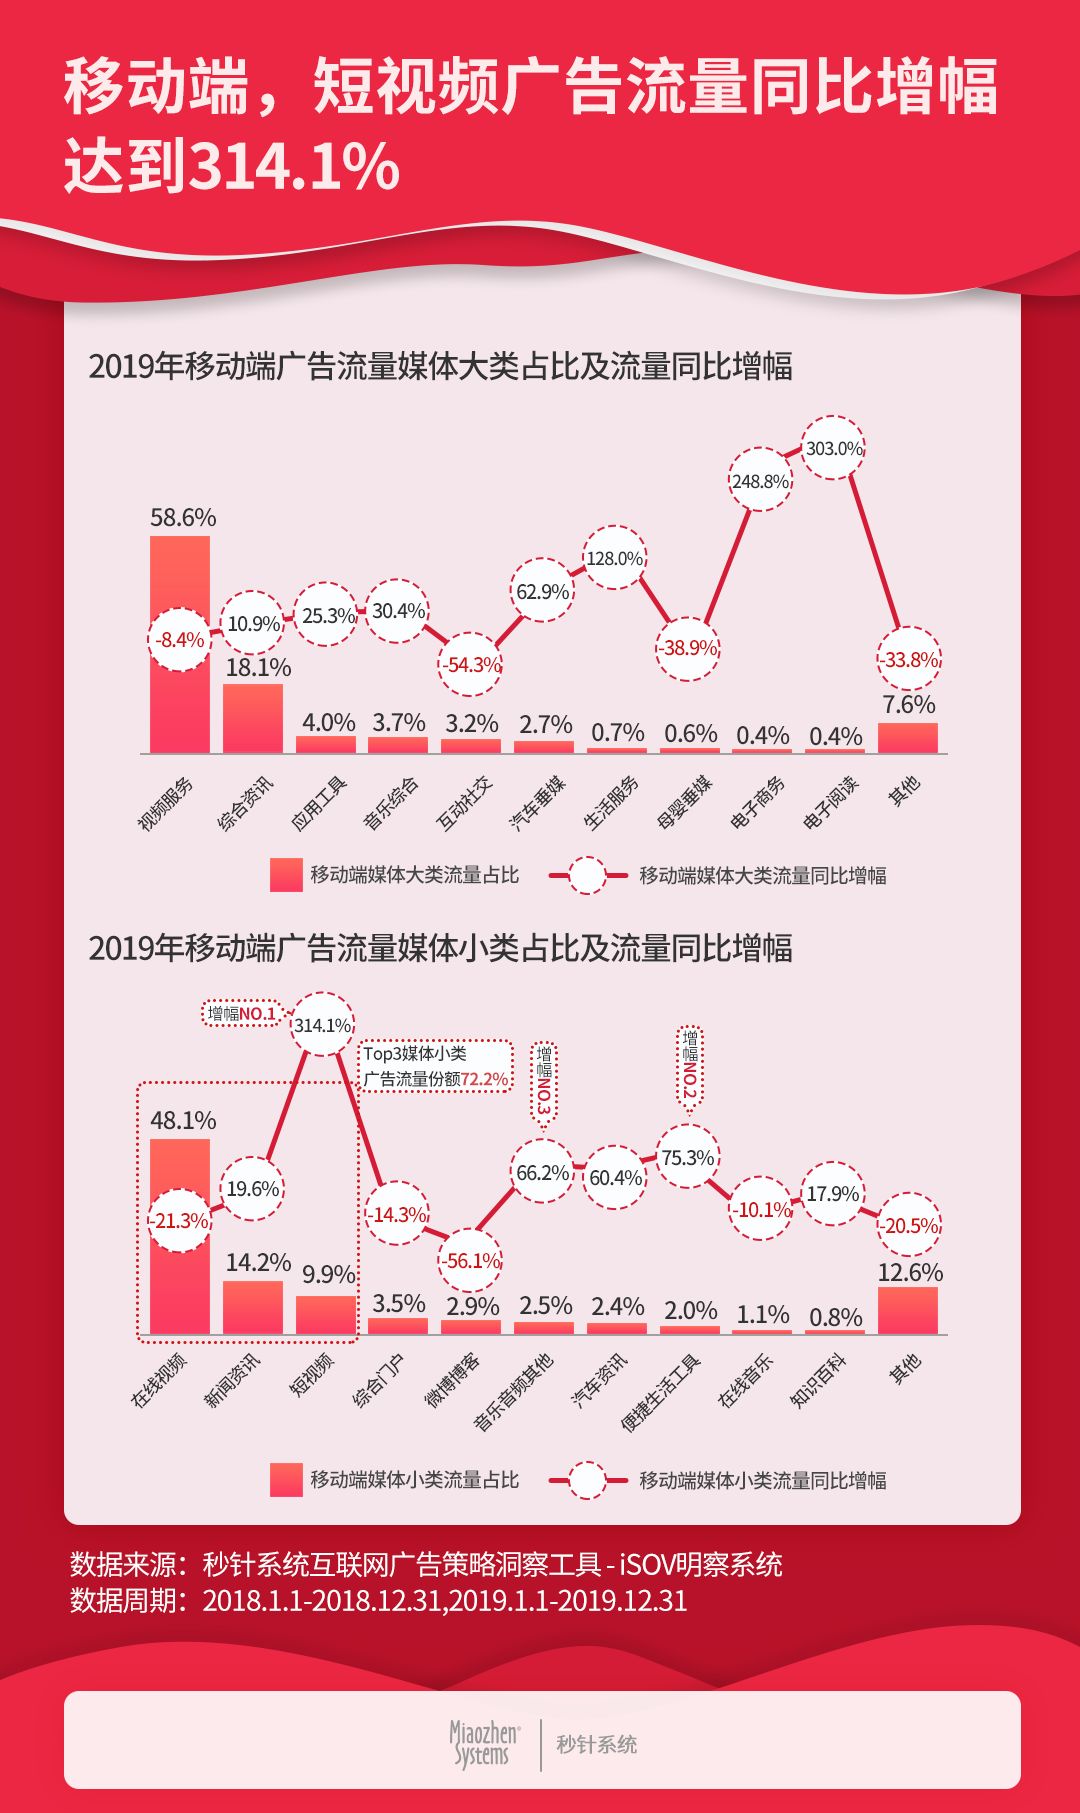 广告流量下降10.6%，秒针系统发布《2019中国互联网广告流量报告》